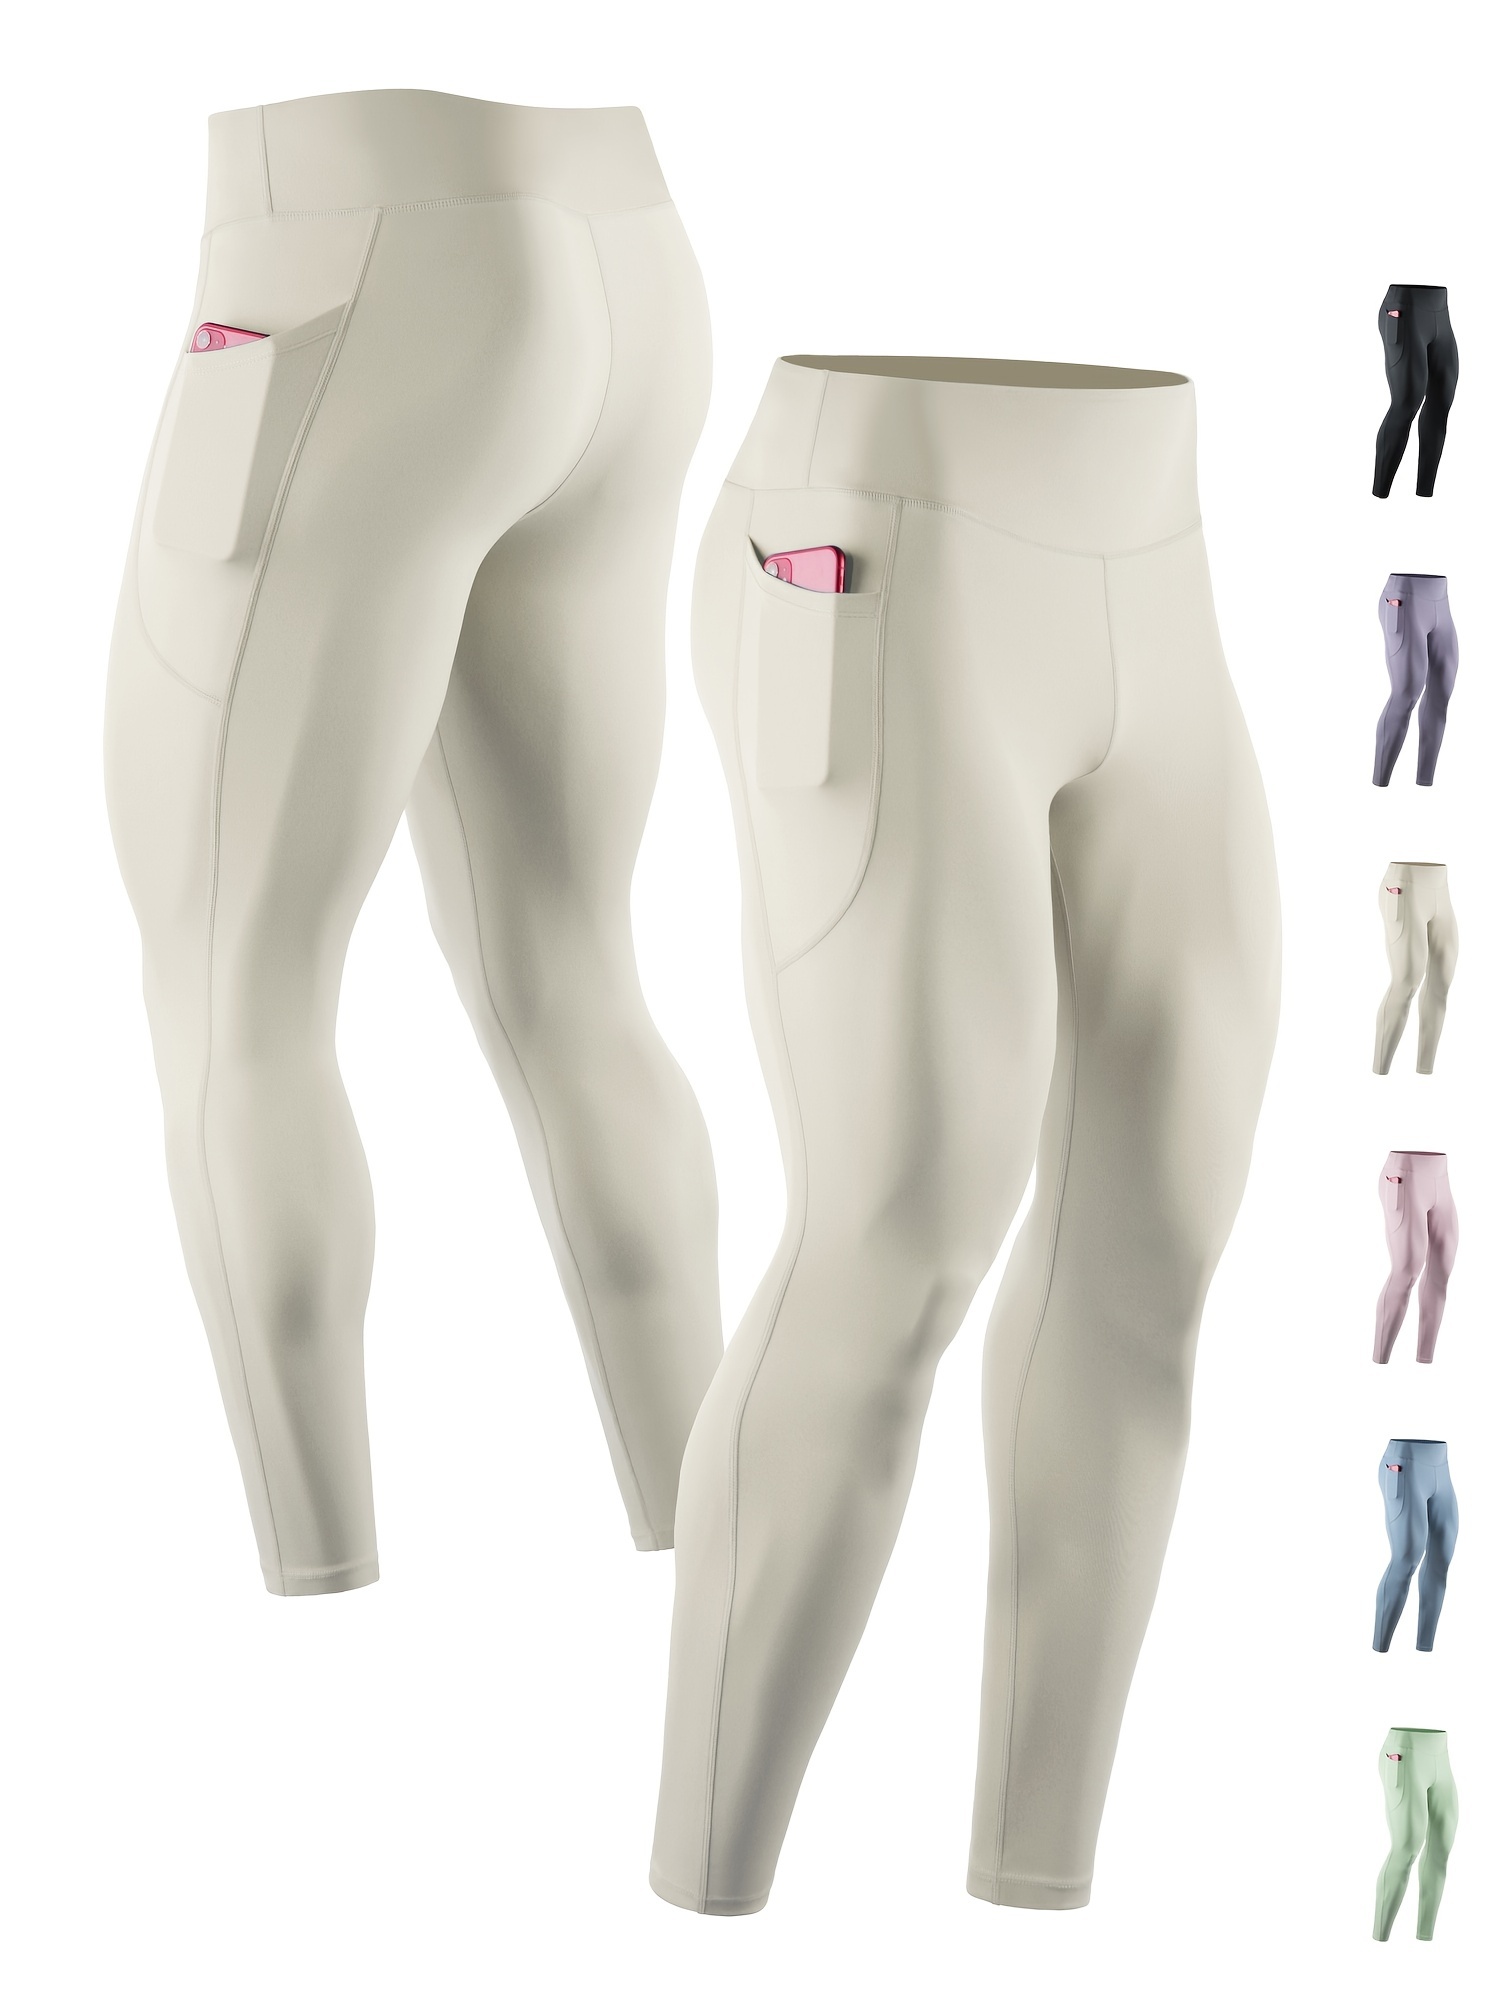 Buy men's leggings or tights online - BodywearStore